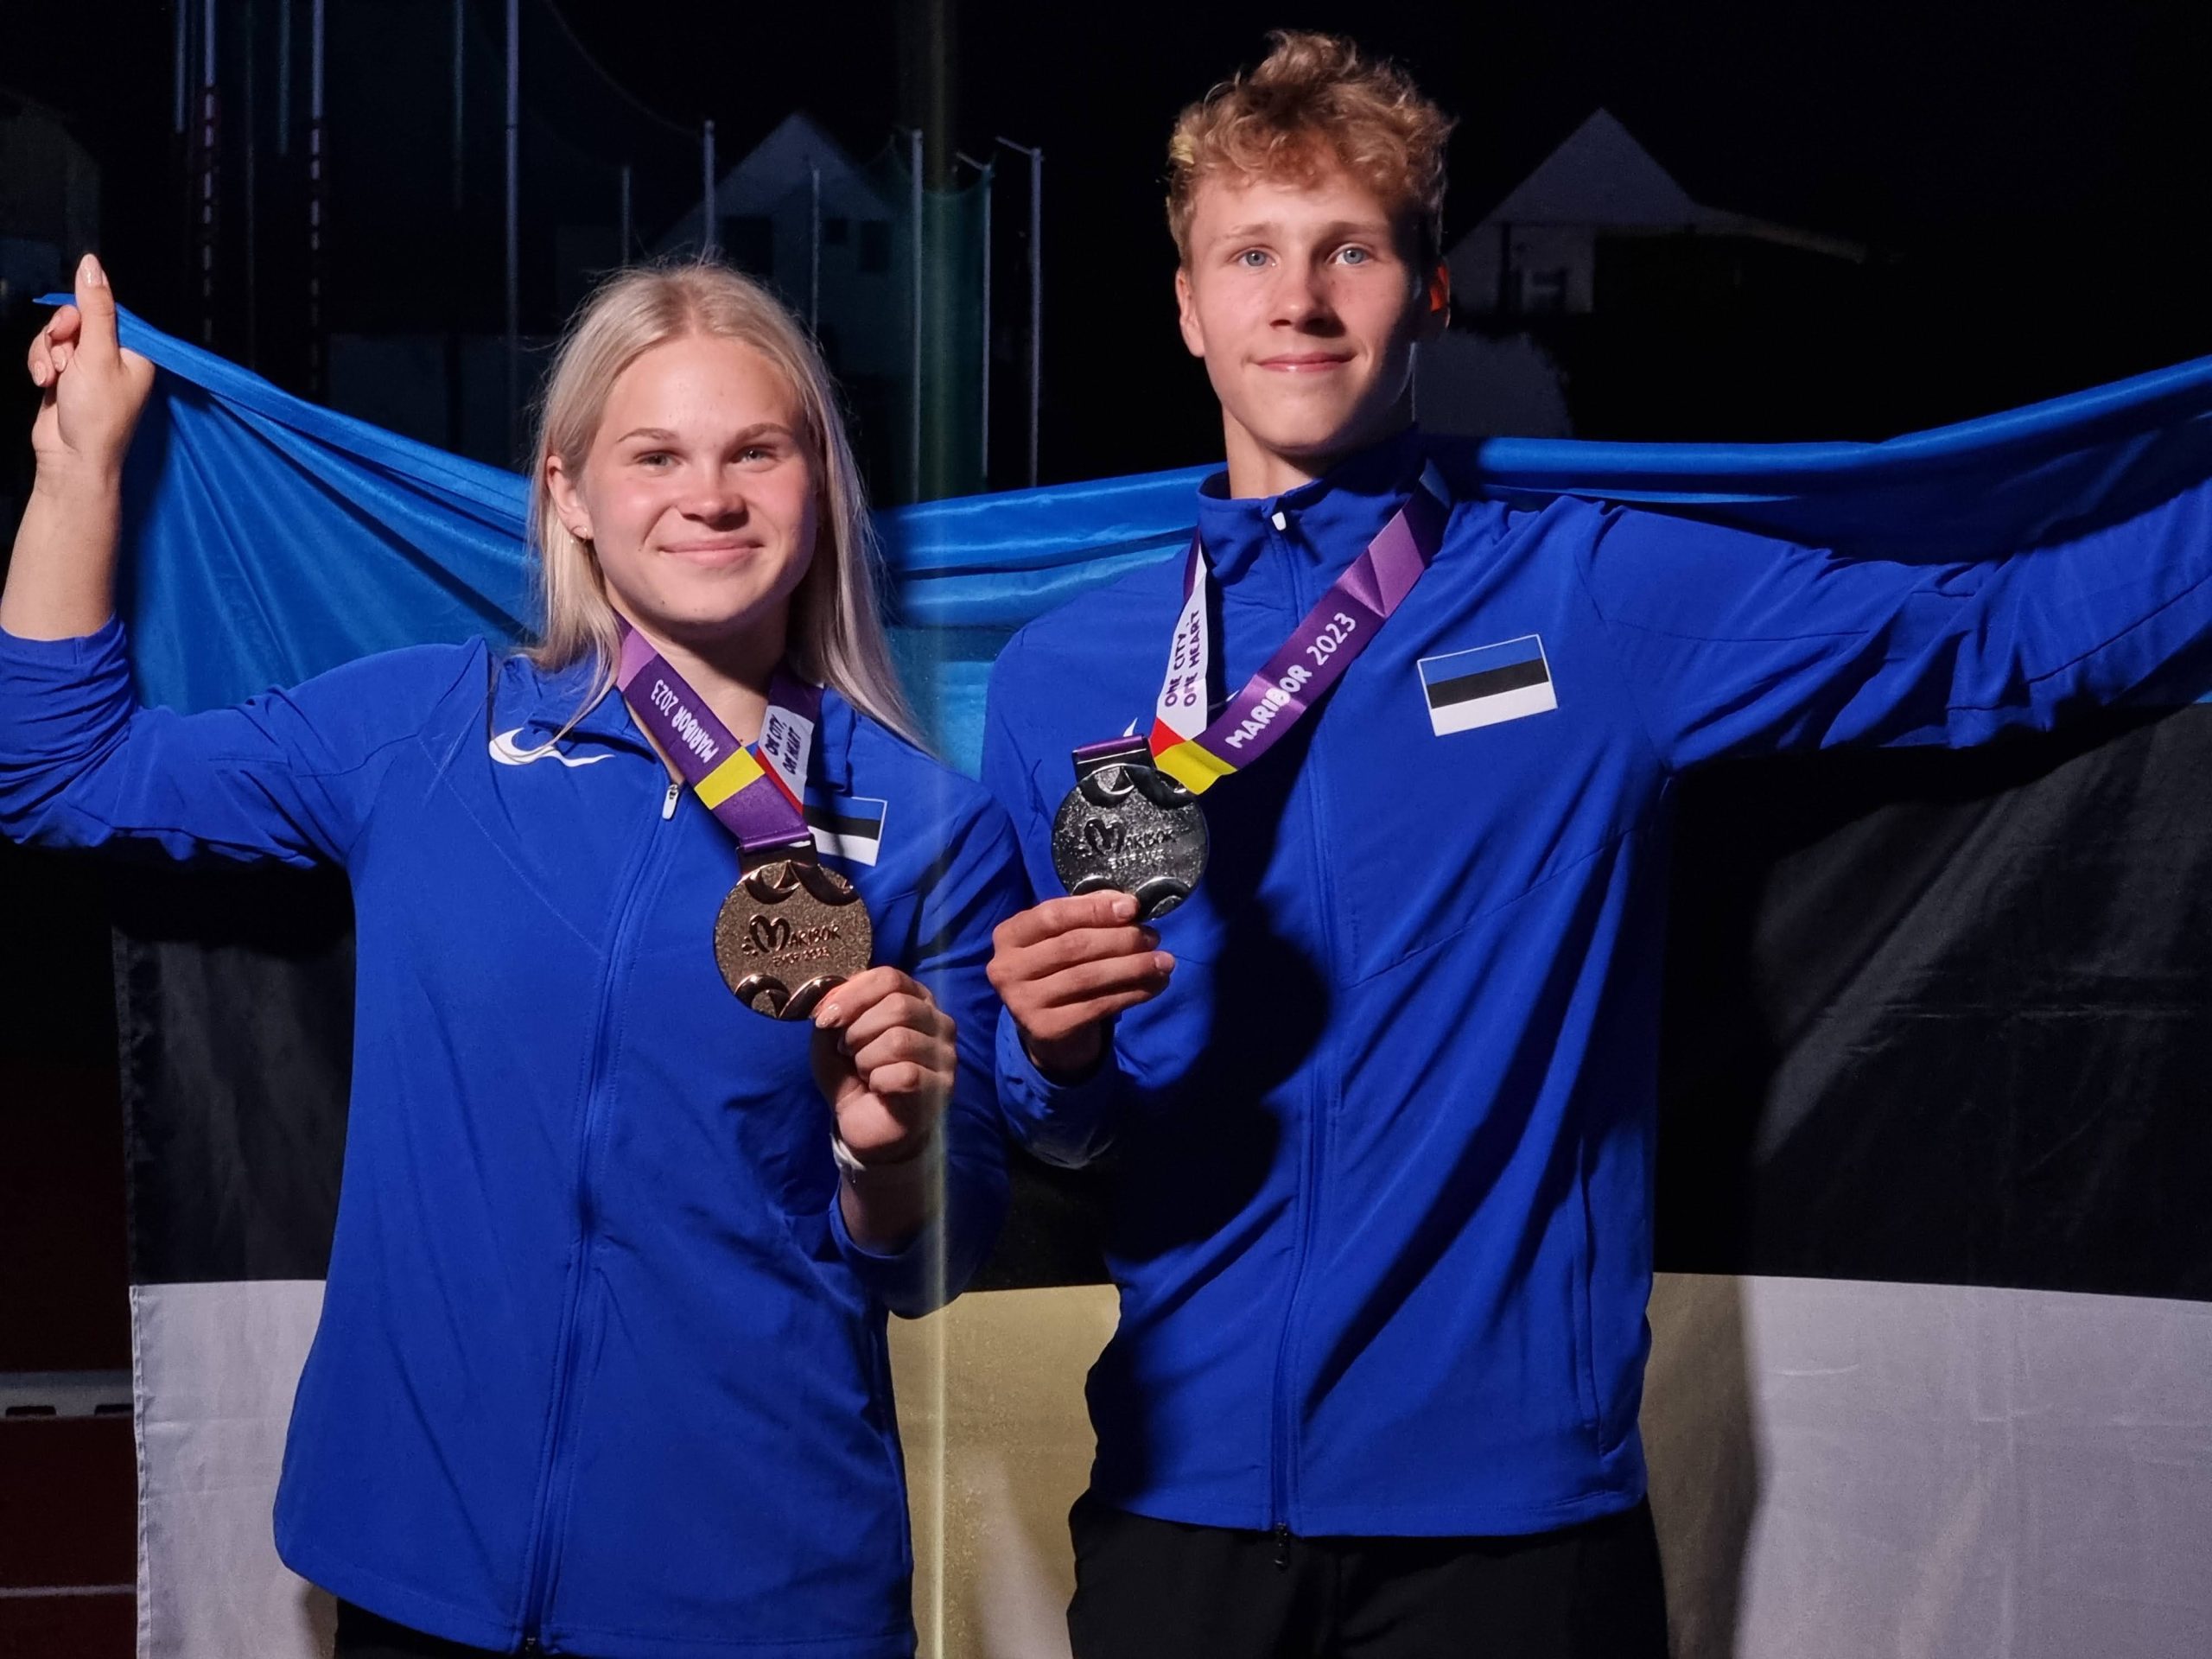 NOORTE OLÜMPIAFESTIVAL I Kergejõustiklased Karl Kristjan Pohlak ja Miia Ott võitsid medali